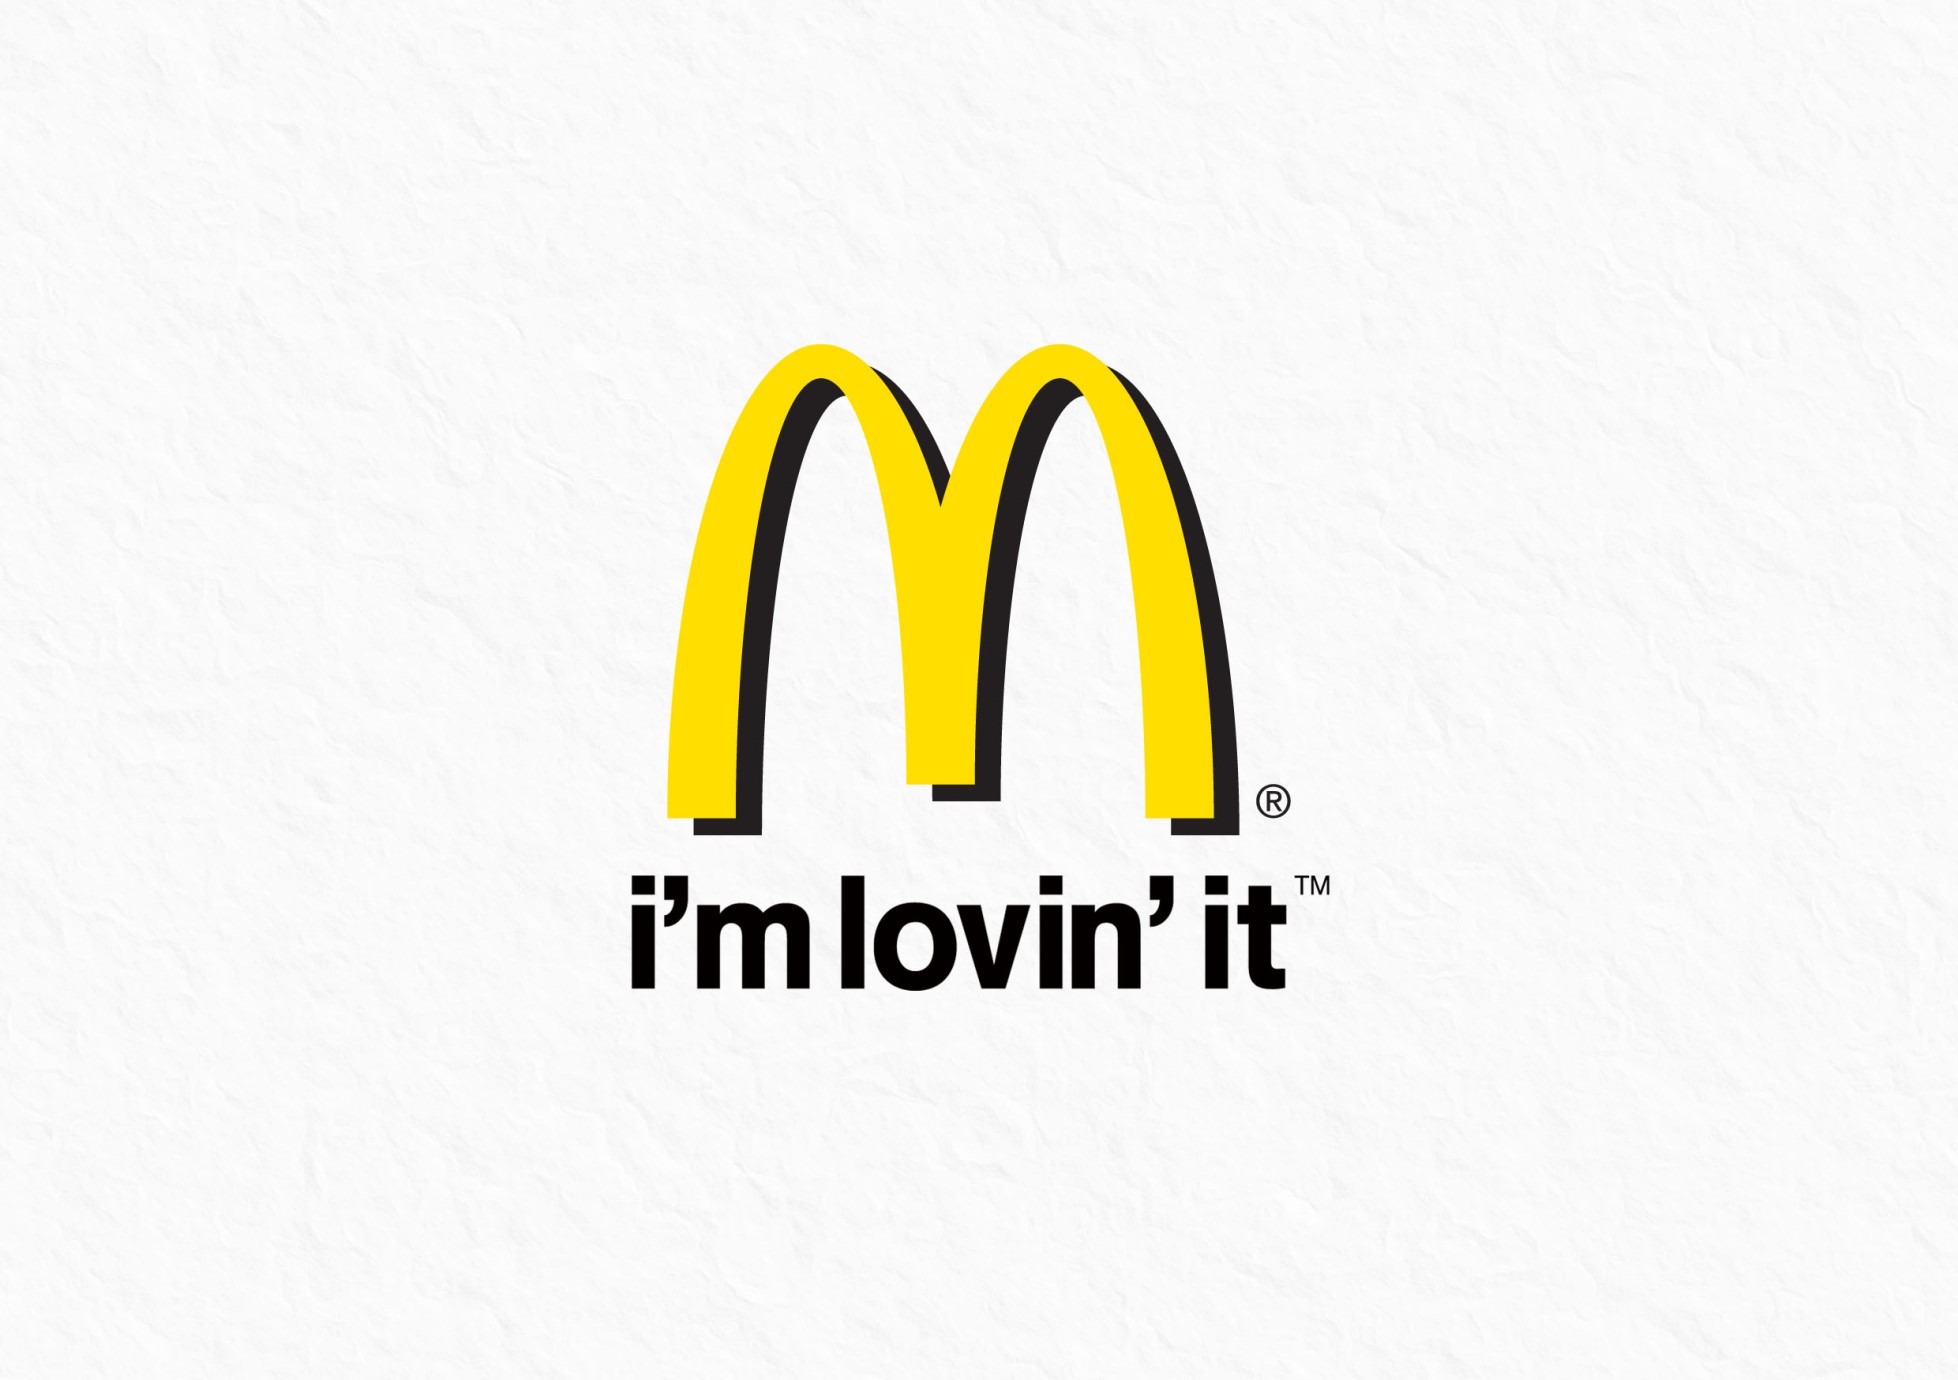 Духи макдональдс. Макдоналдс слоган. Слоган компании макдональдс. Макдональдс с логотипом м. Лозунг Макдональдса.